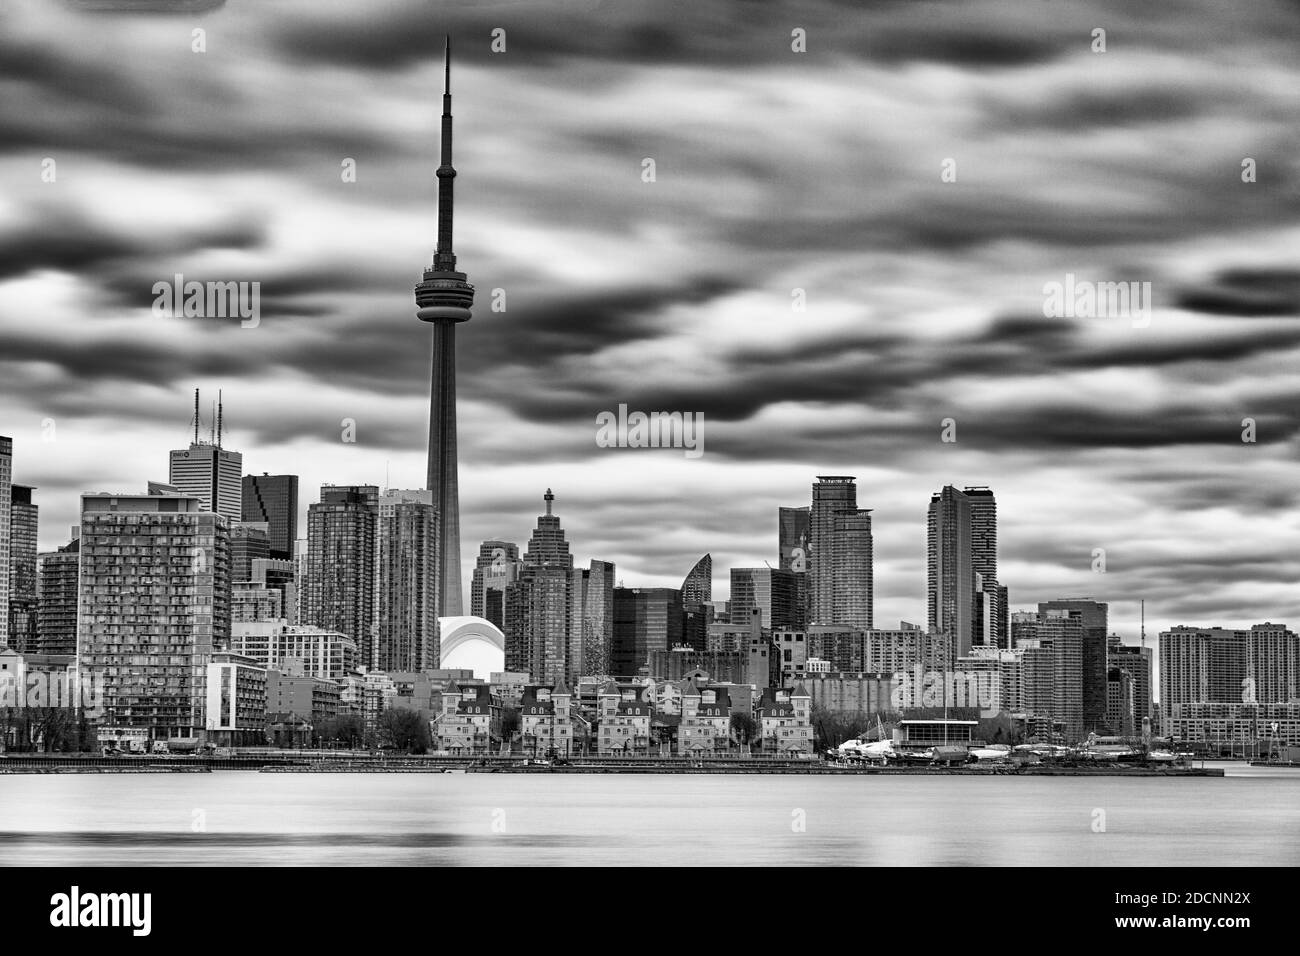 Immagine in bianco e nero dello skyline di Toronto. Toronto, Ontario, Canada Foto Stock